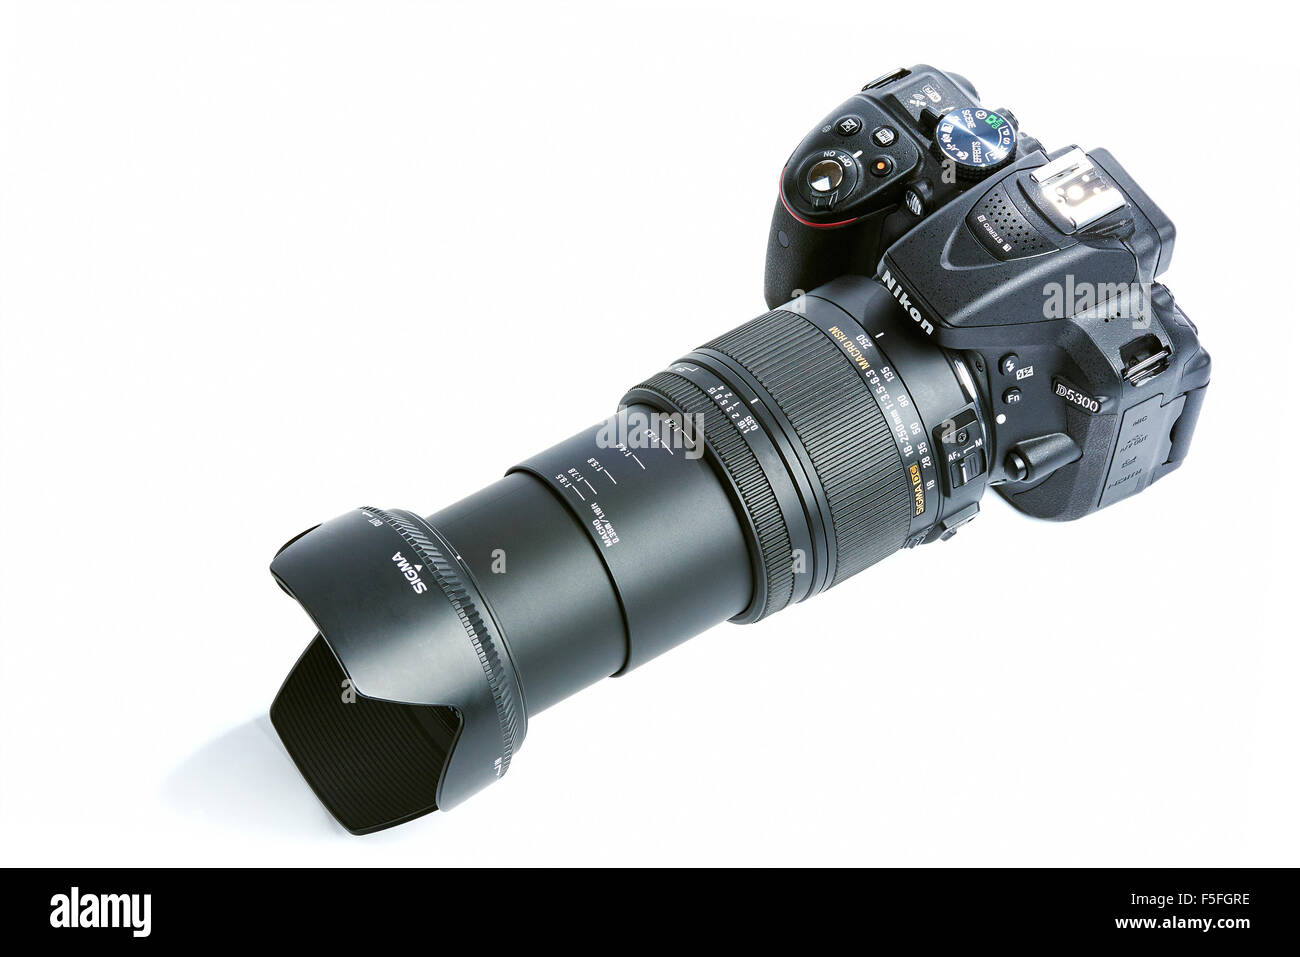 Nikon D5300 Fotocamera reflex digitale con zoom Sigma 18-250 mm OS HSM  Obiettivo Macro isolati su sfondo bianco Foto stock - Alamy